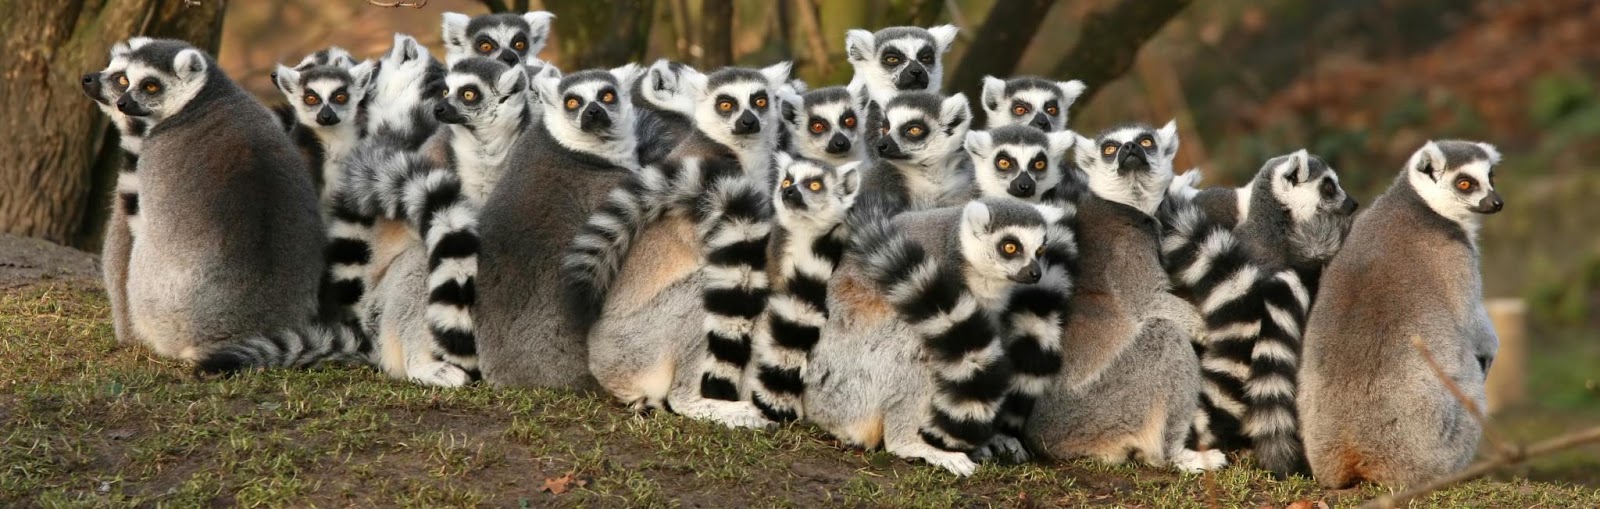 africa-madagascar-group-of-lemurs.jpg